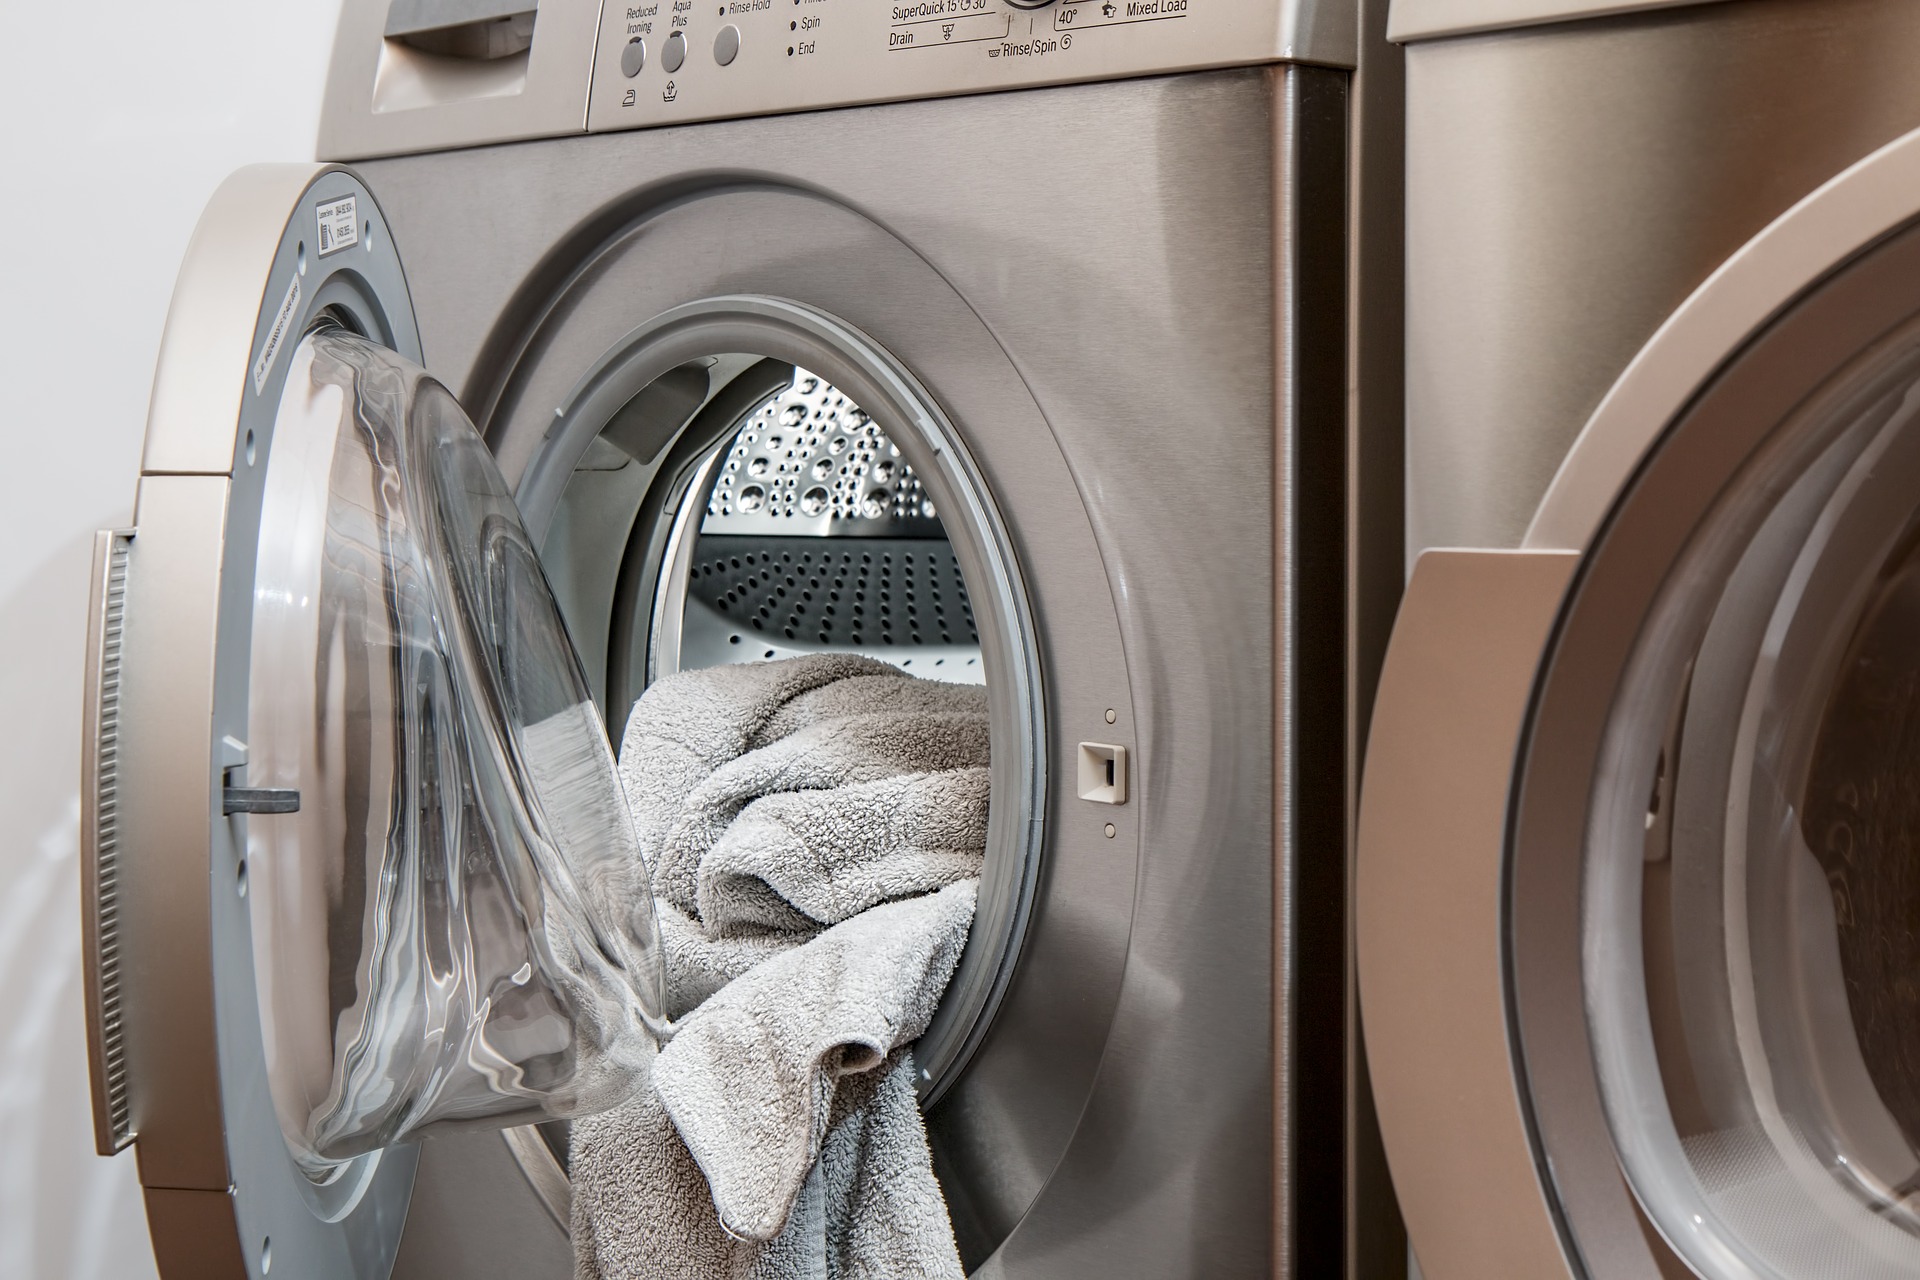 Baño una vez Sí misma Puedo limpiar la lavadora con vinagre? | Consejos ᐅ WASHROCKS